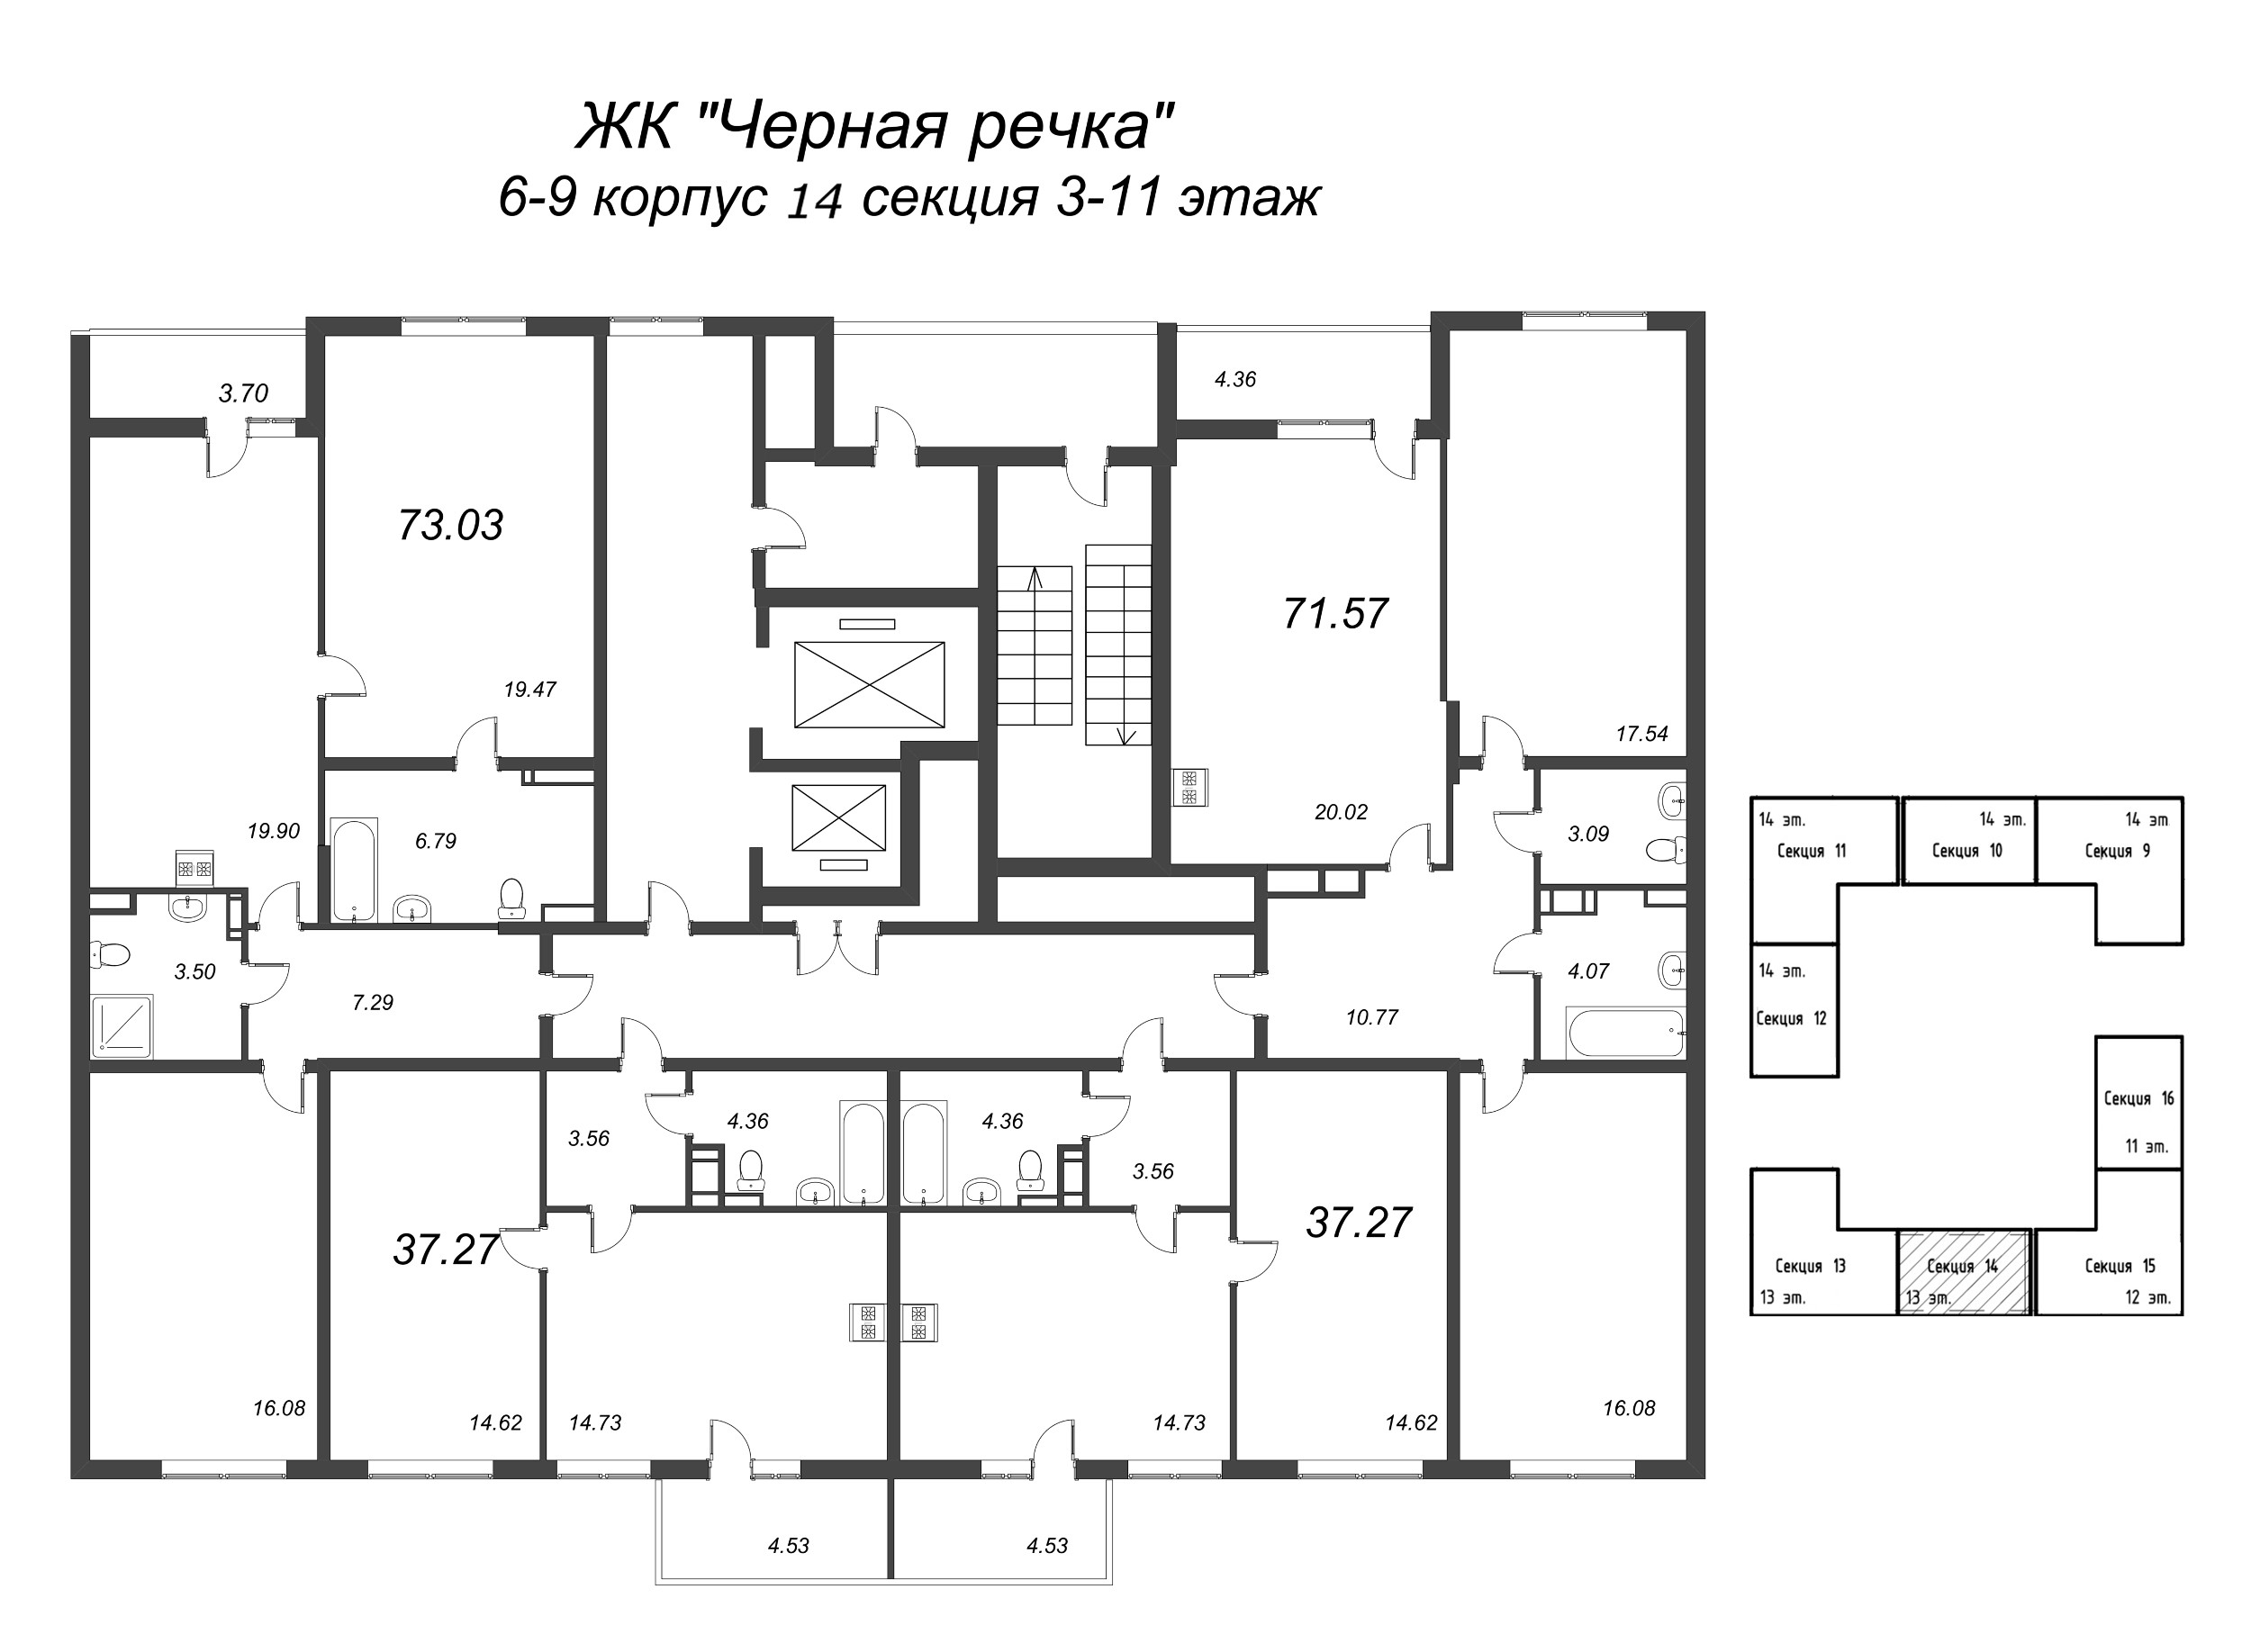 3-комнатная (Евро) квартира, 73.03 м² в ЖК "Чёрная речка" - планировка этажа